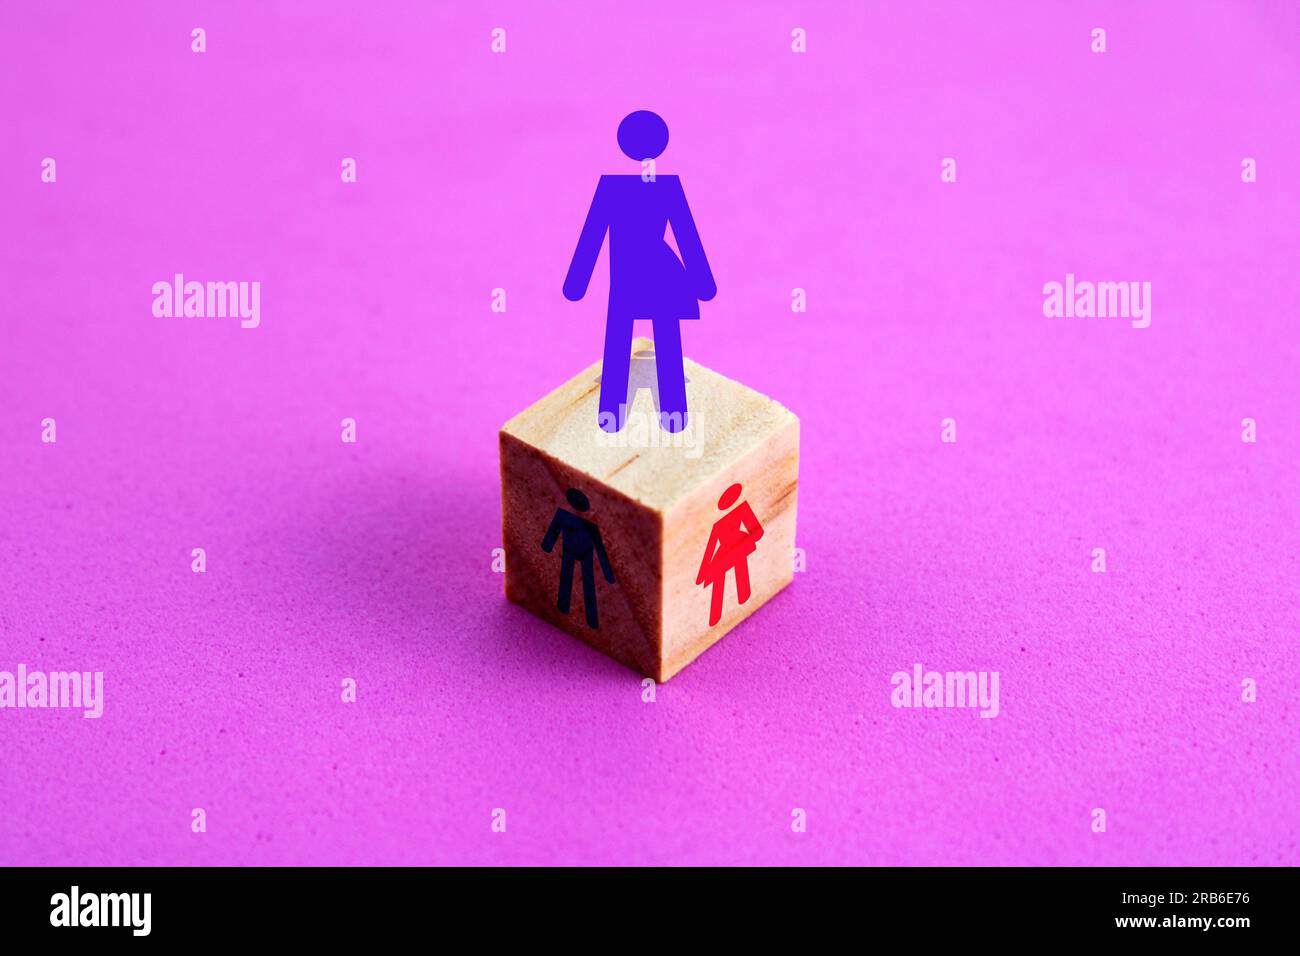 Icône de personne transgenre sur cube en bois Banque D'Images